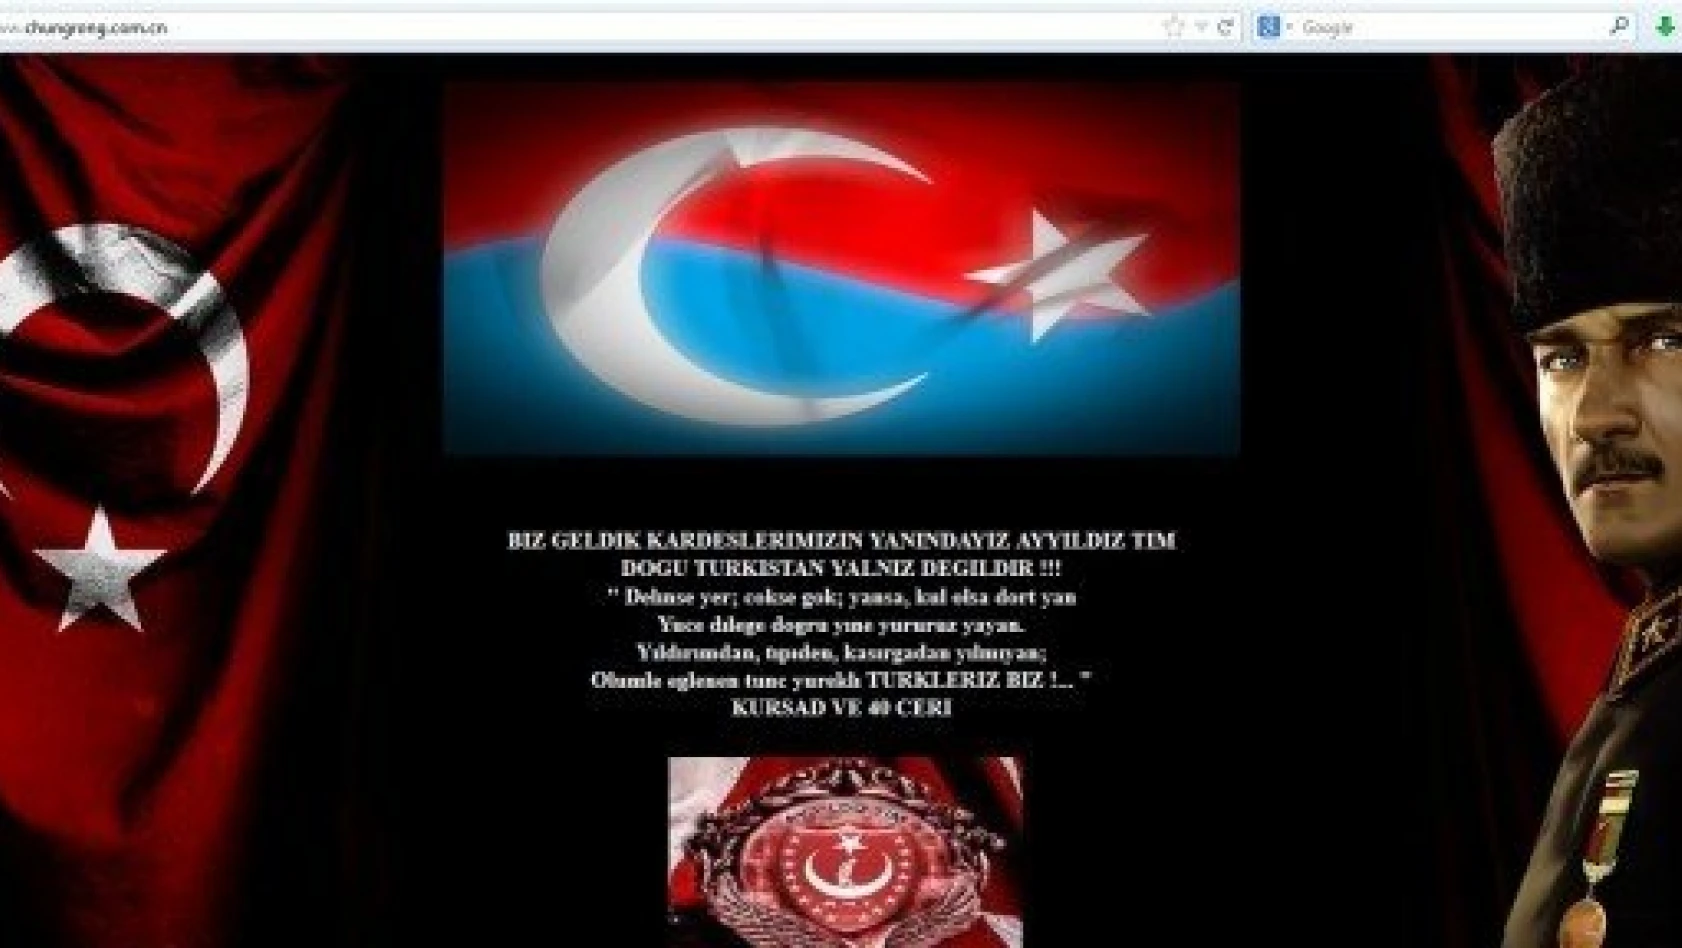 Türk hackerler, Doğu Türkistan için Çindeki siteleri hackledi